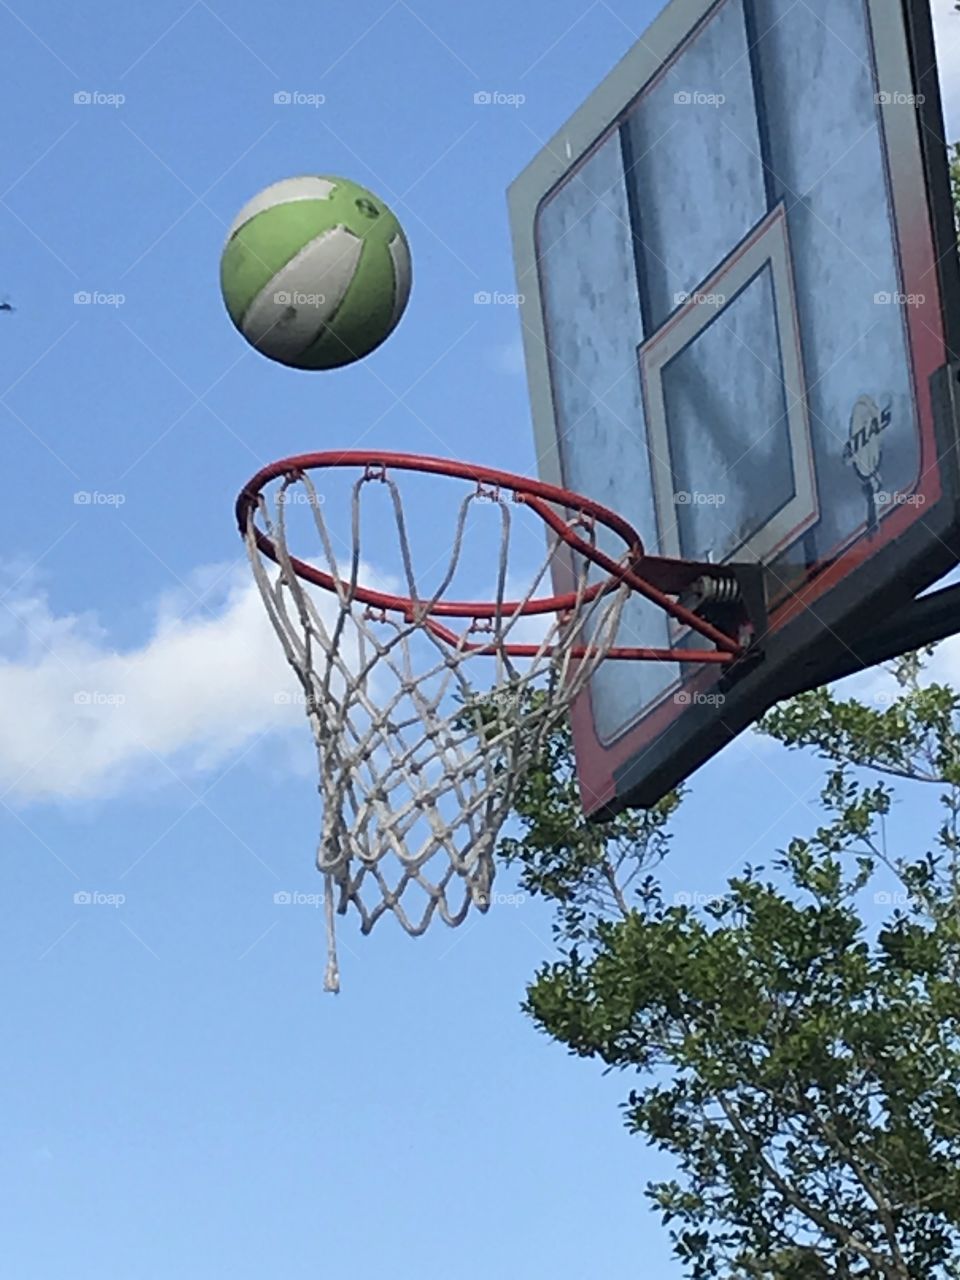 Ball basketball 